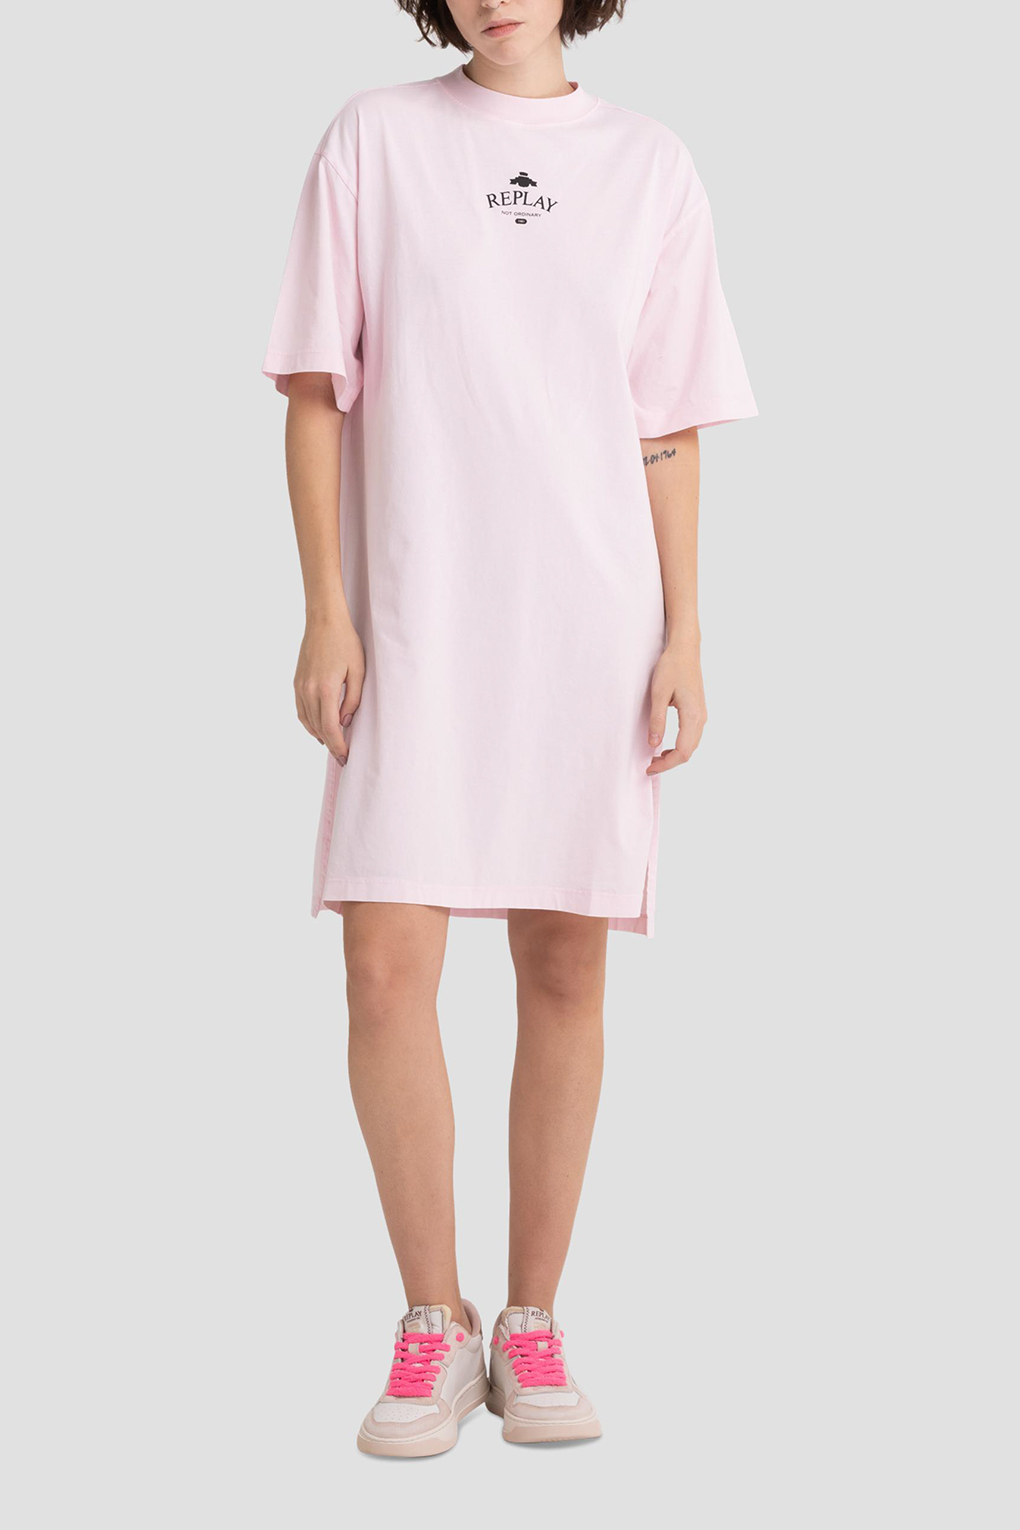 Платье женское Replay W9713C.000.23178G розовое L